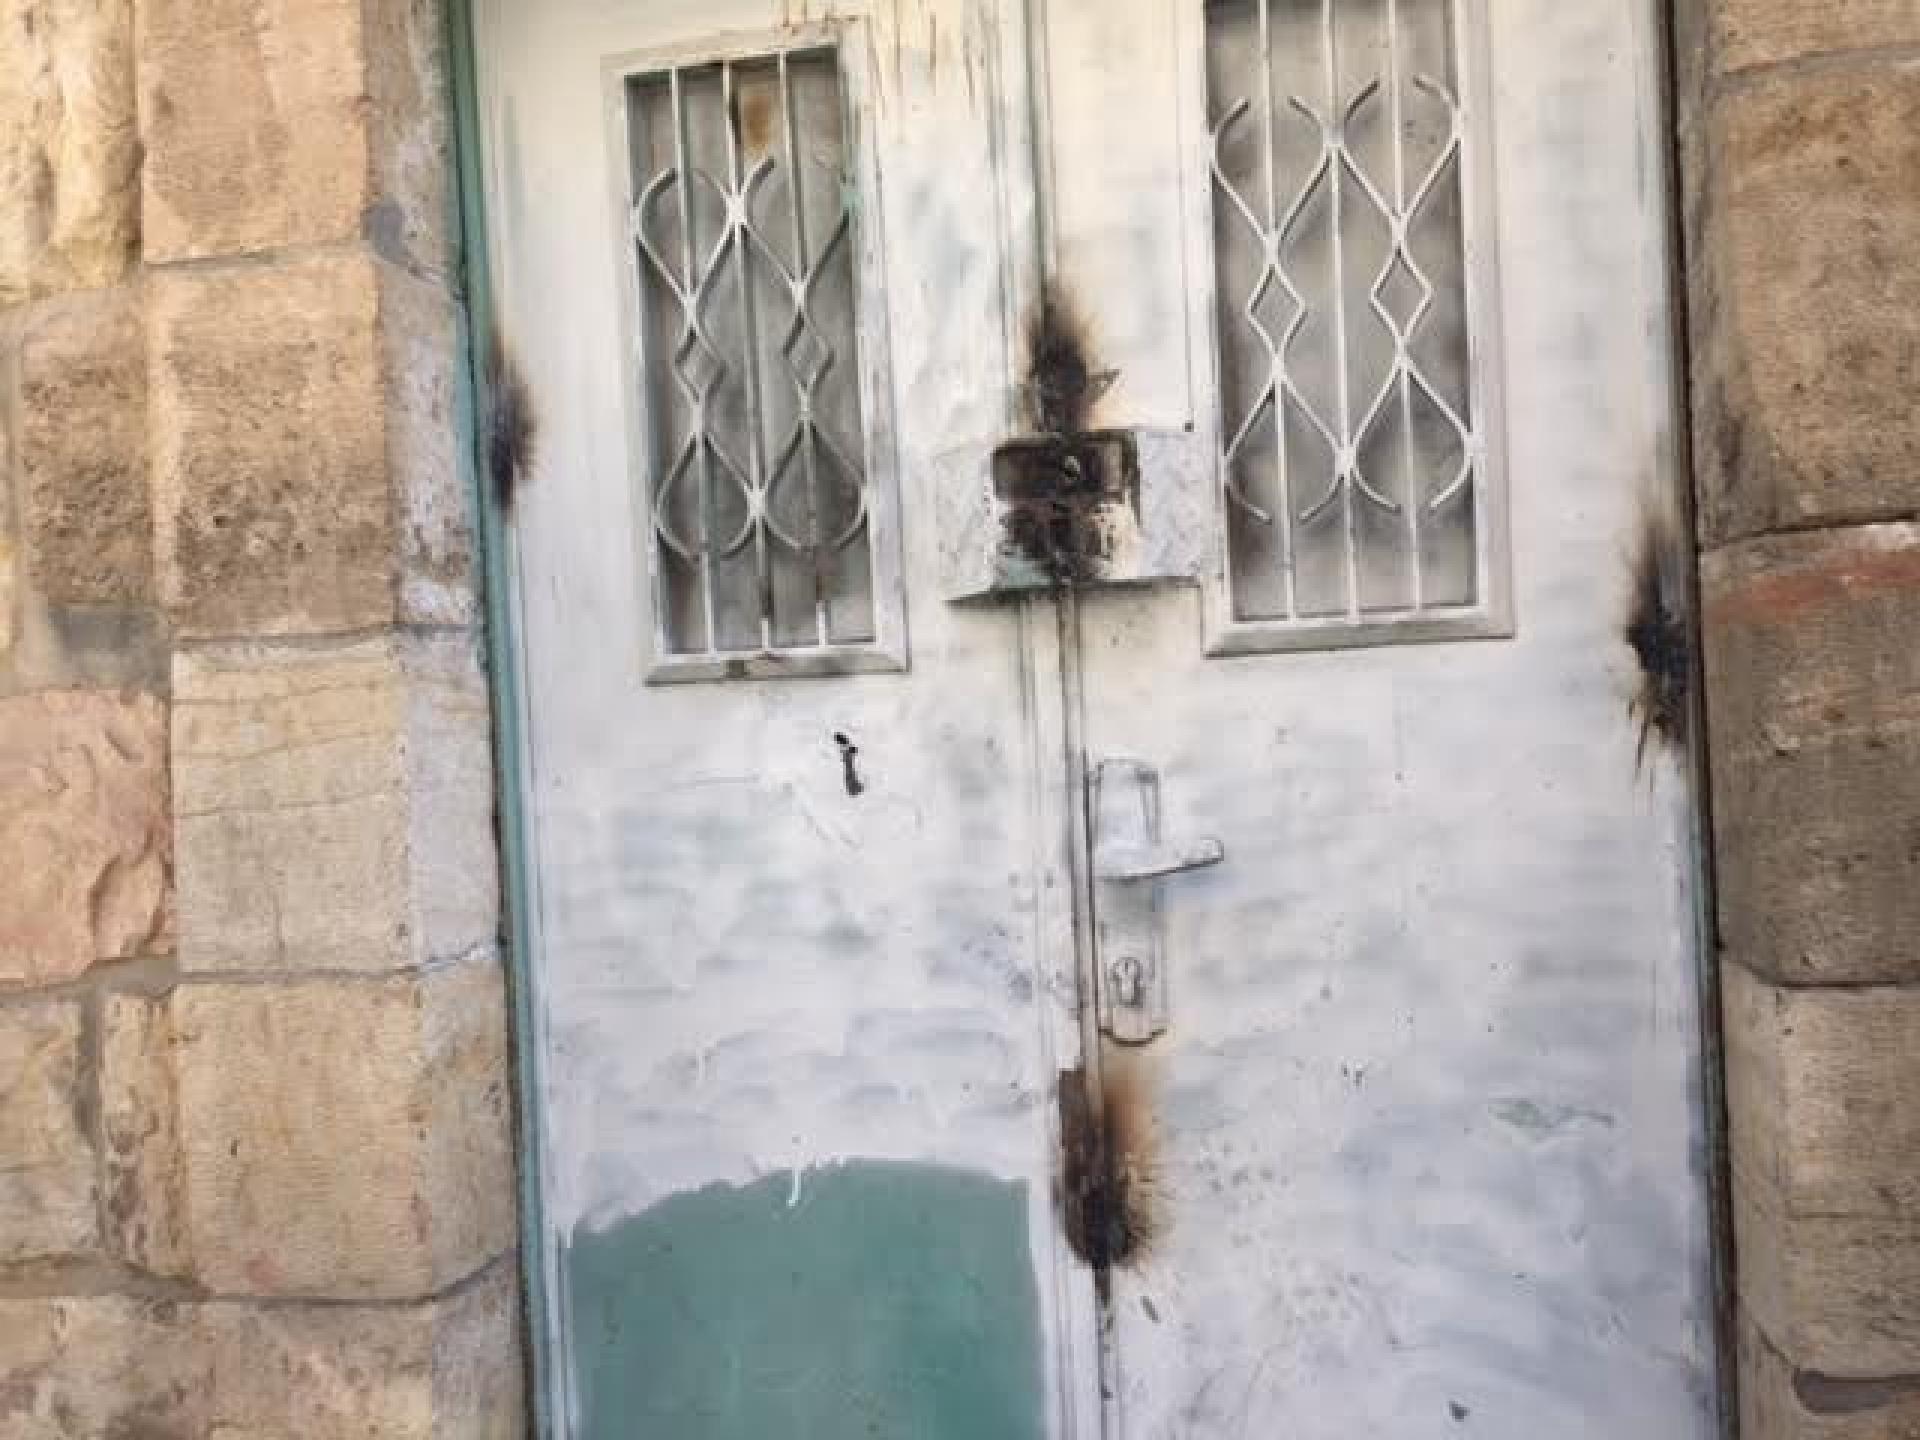 הדלת המרותכת מחדש ברחוב השוהדא